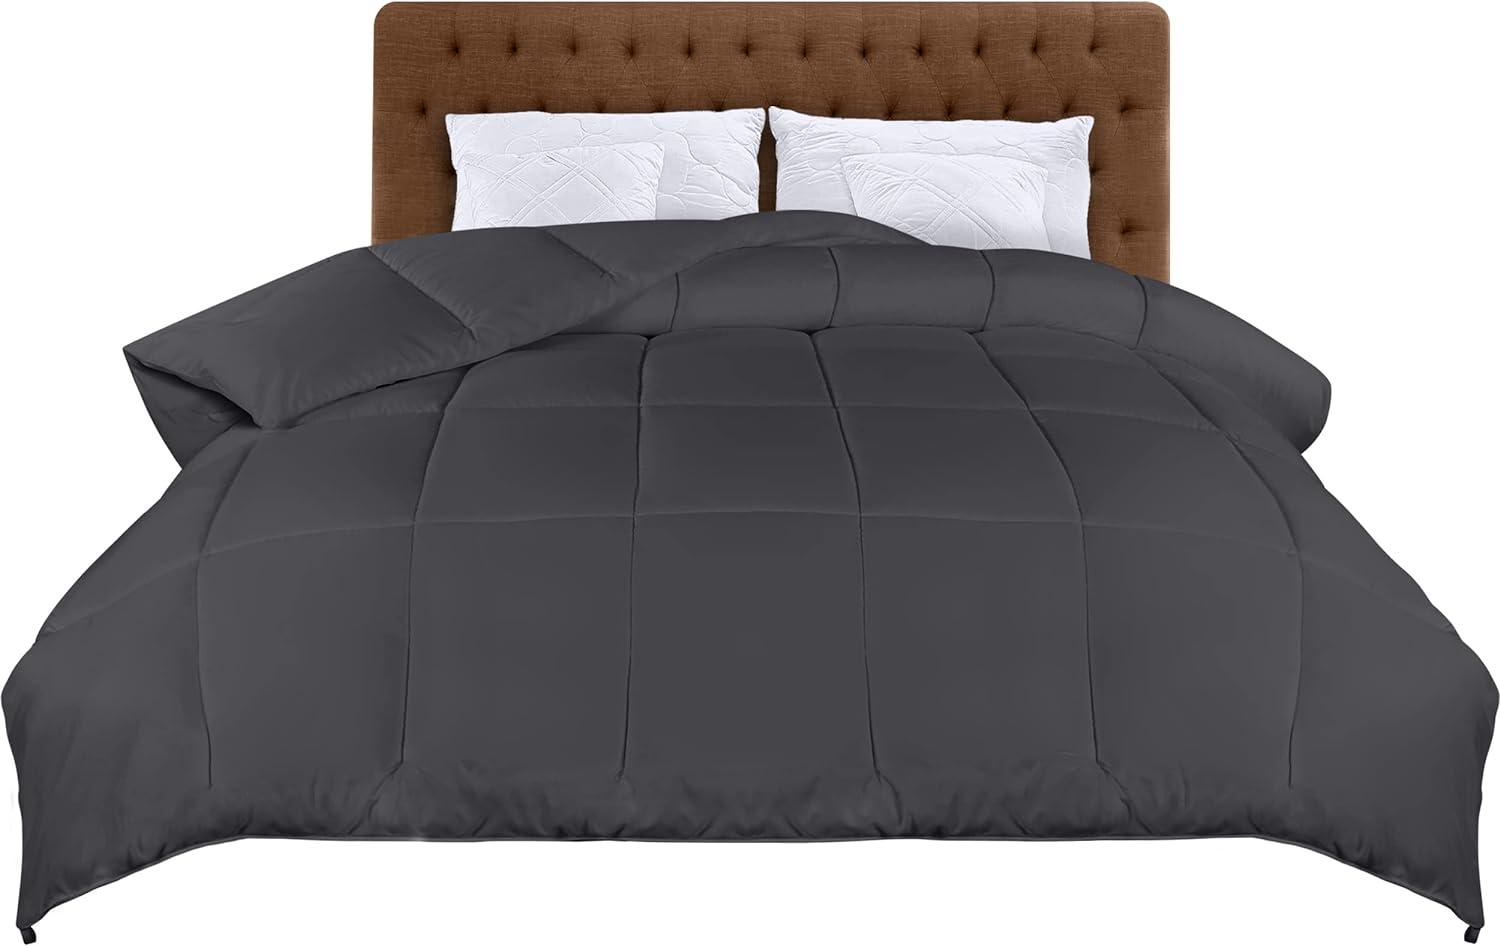 Utopia Bedding Bettdecke mit Polyesterfüllung, Mikrofaser Grau, 200x200cm Bild 1